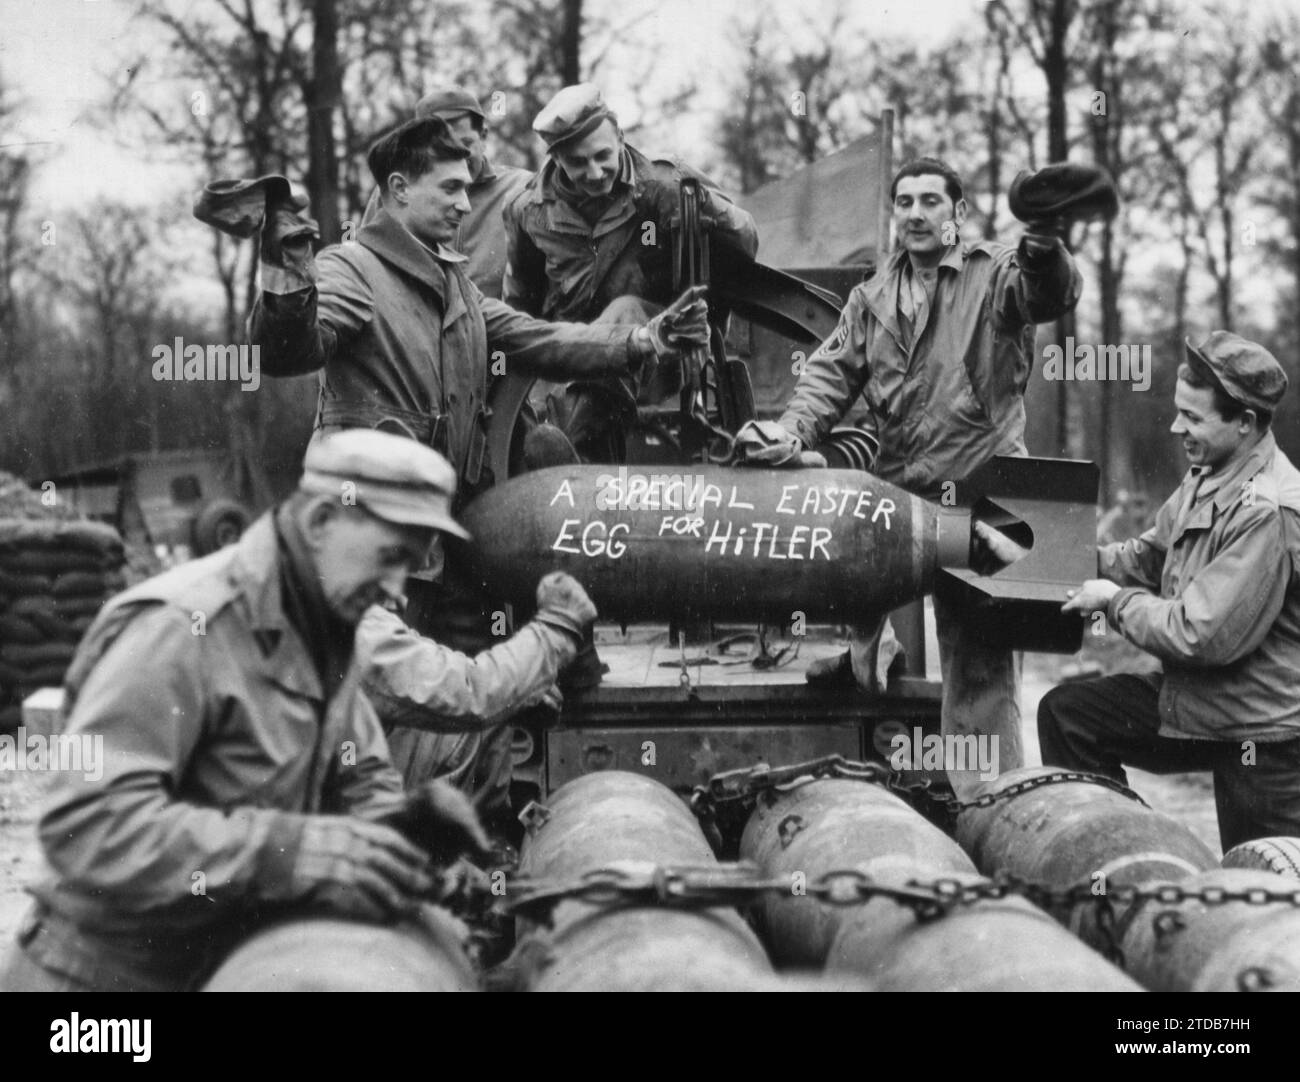 Saluto di Pasqua per Hitler... in linea con lo spirito delle feste, Un uovo di Pasqua speciale per Hitler - questi membri dell'equipaggio di un'8a stazione di caccia Aaf vogliono che il vecchio Shickelgruber sappia che pensano sempre a lui... ma in modo esplosivo, intorno al 1943 Foto Stock